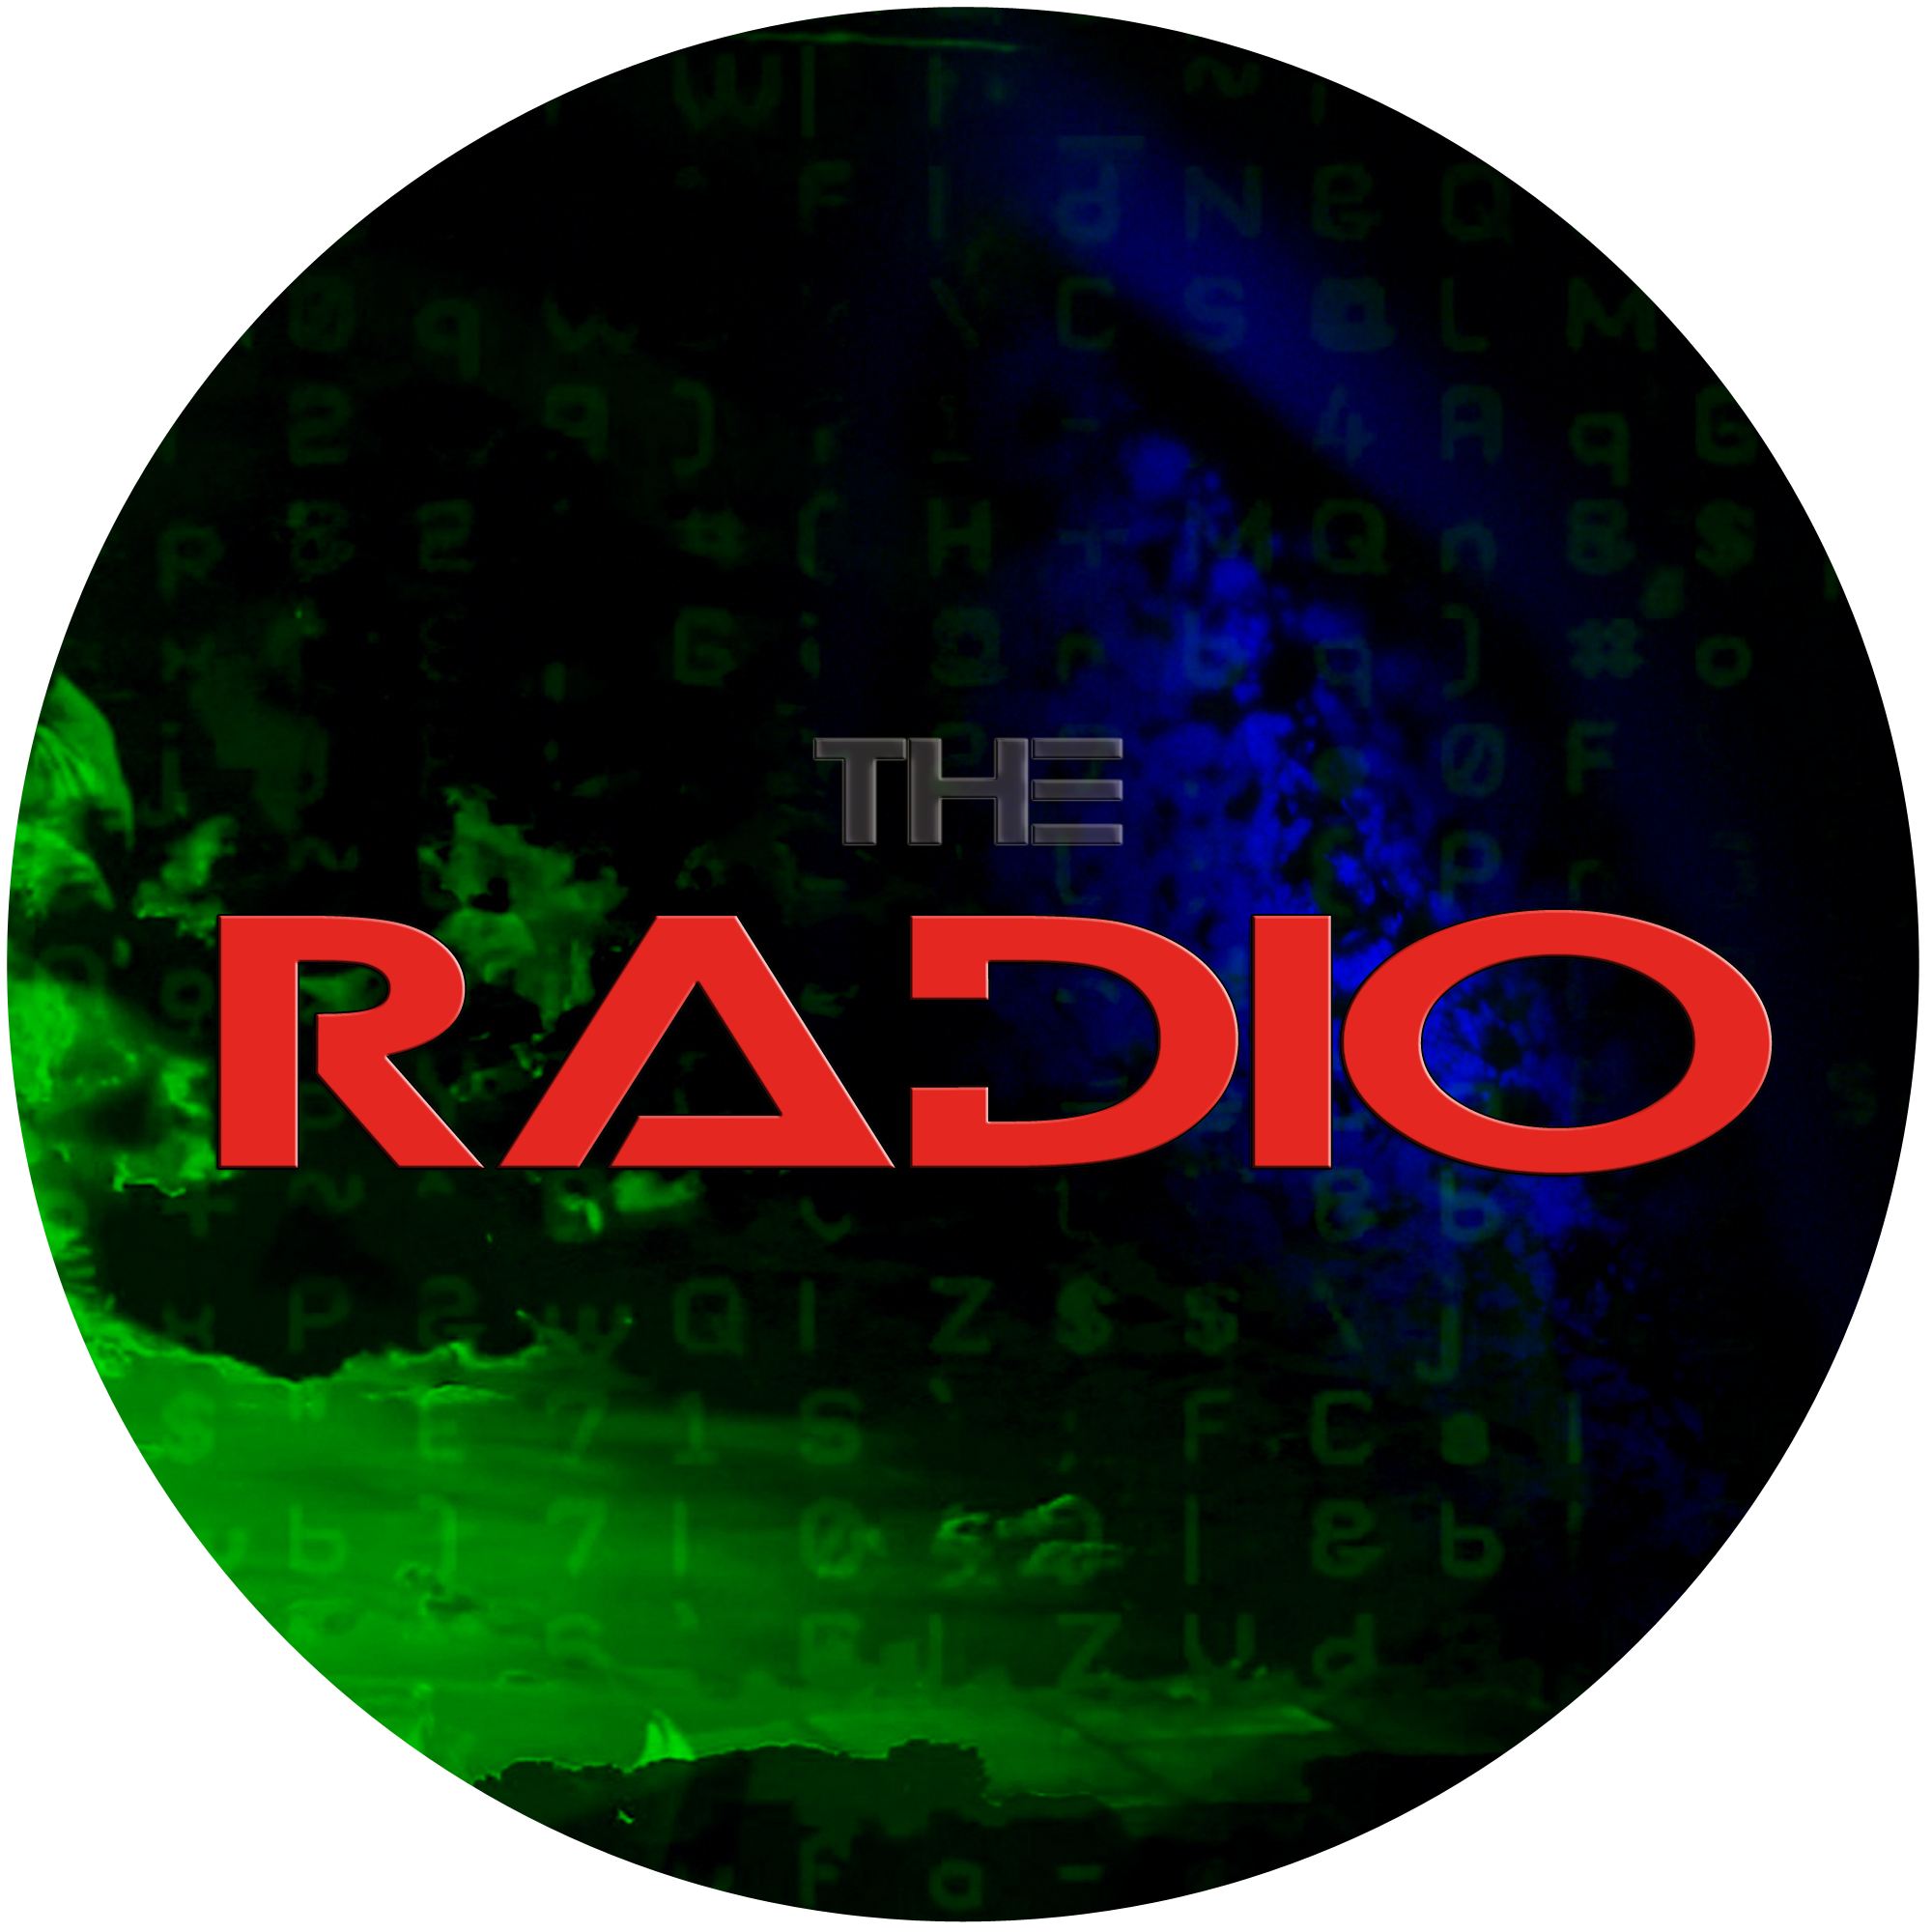 The RADIO